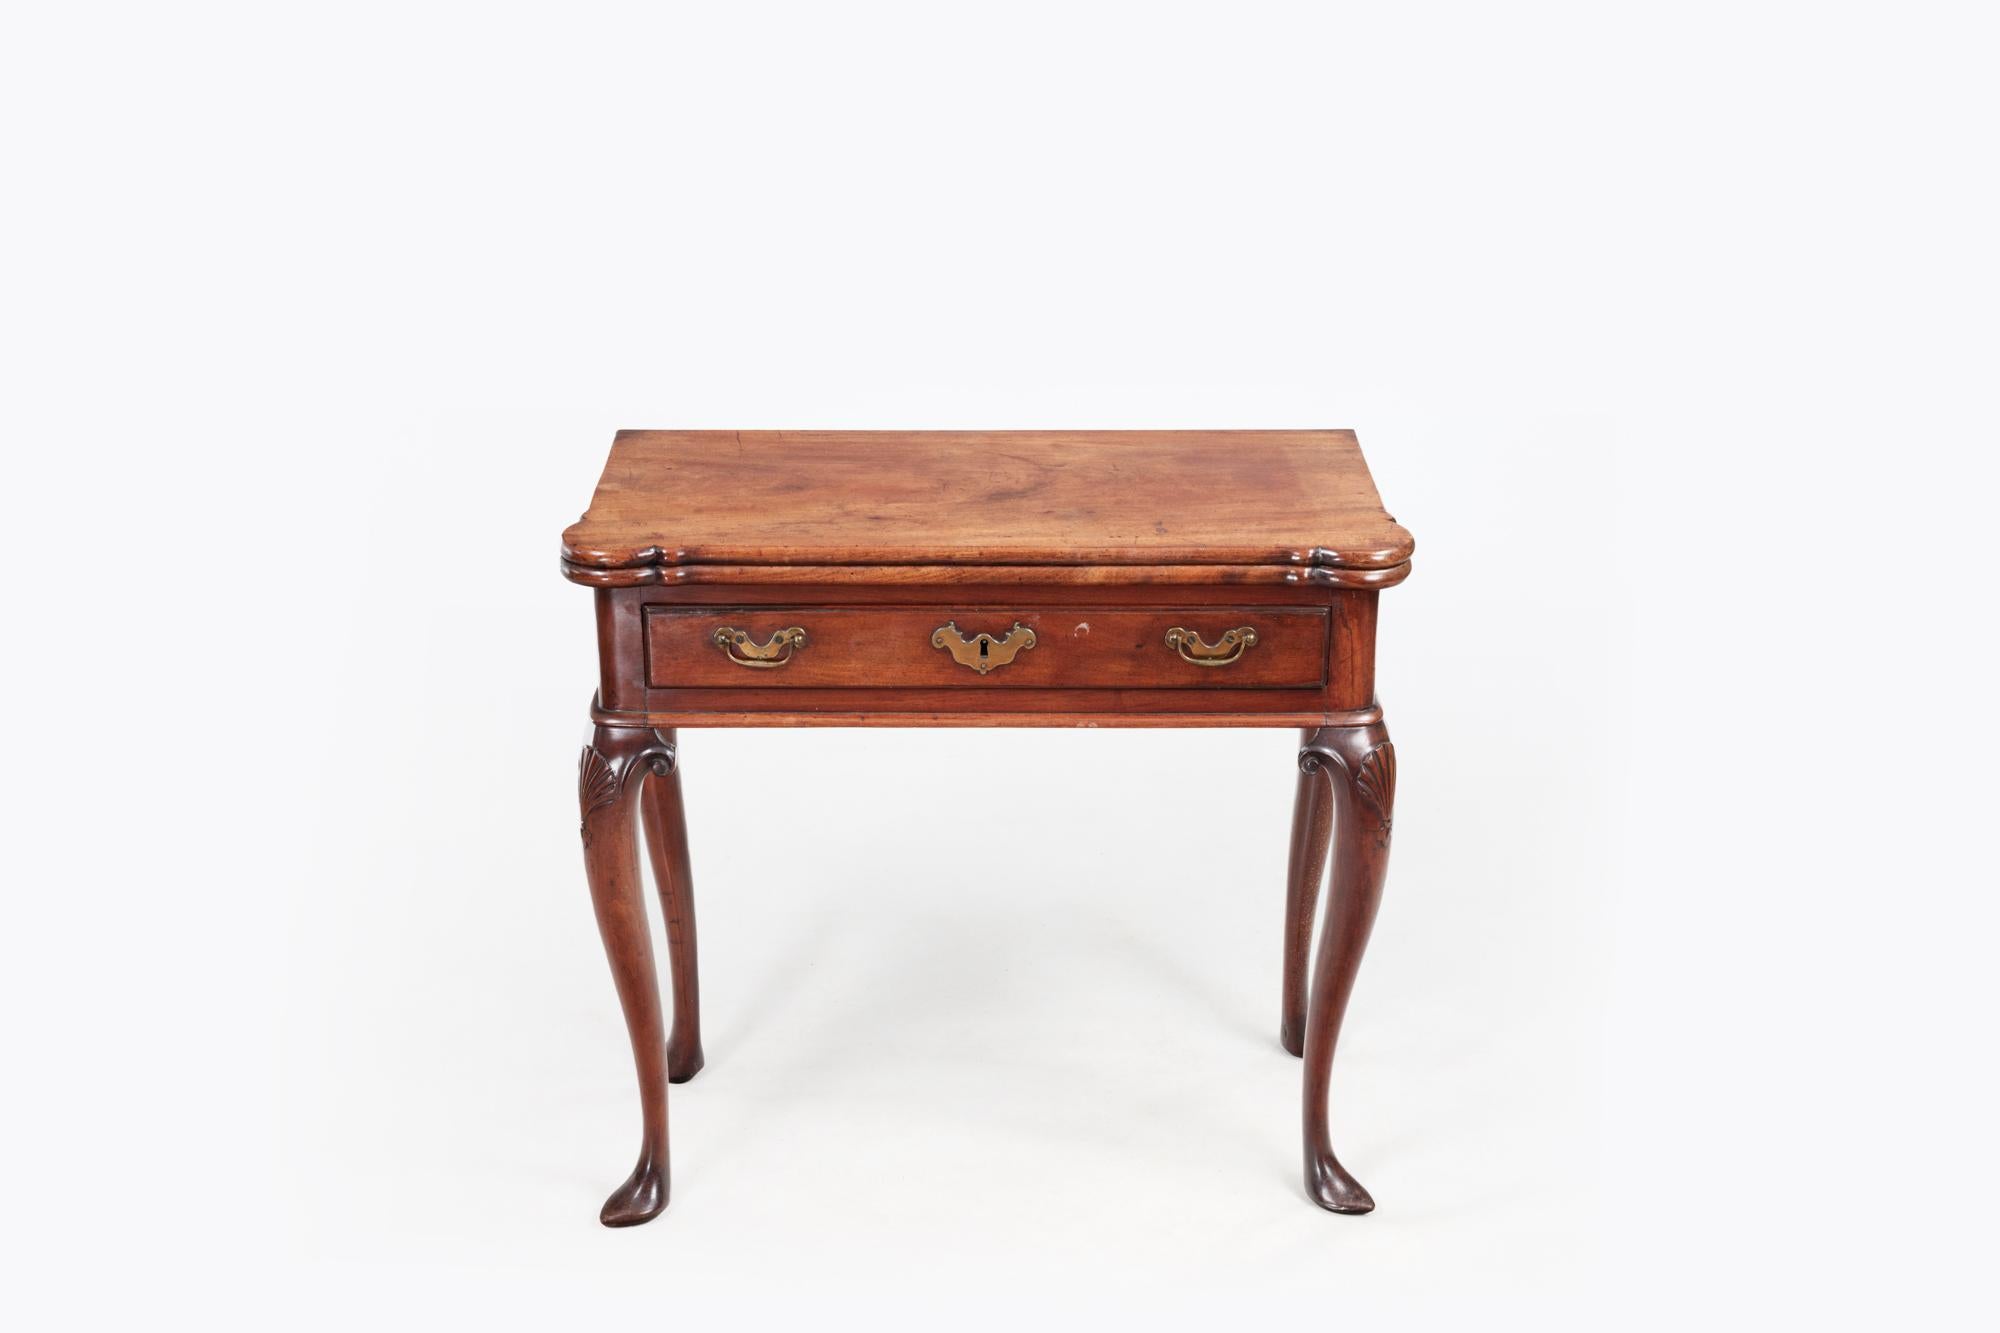 Table à thé Foldes du 18e siècle en acajou avec plateau en forme. Peu commun pour ce type de pièce, il repose sur quatre pieds cabriole assortis, dont les genoux sont ornés de festons et de volutes, et se termine par des pieds en forme de